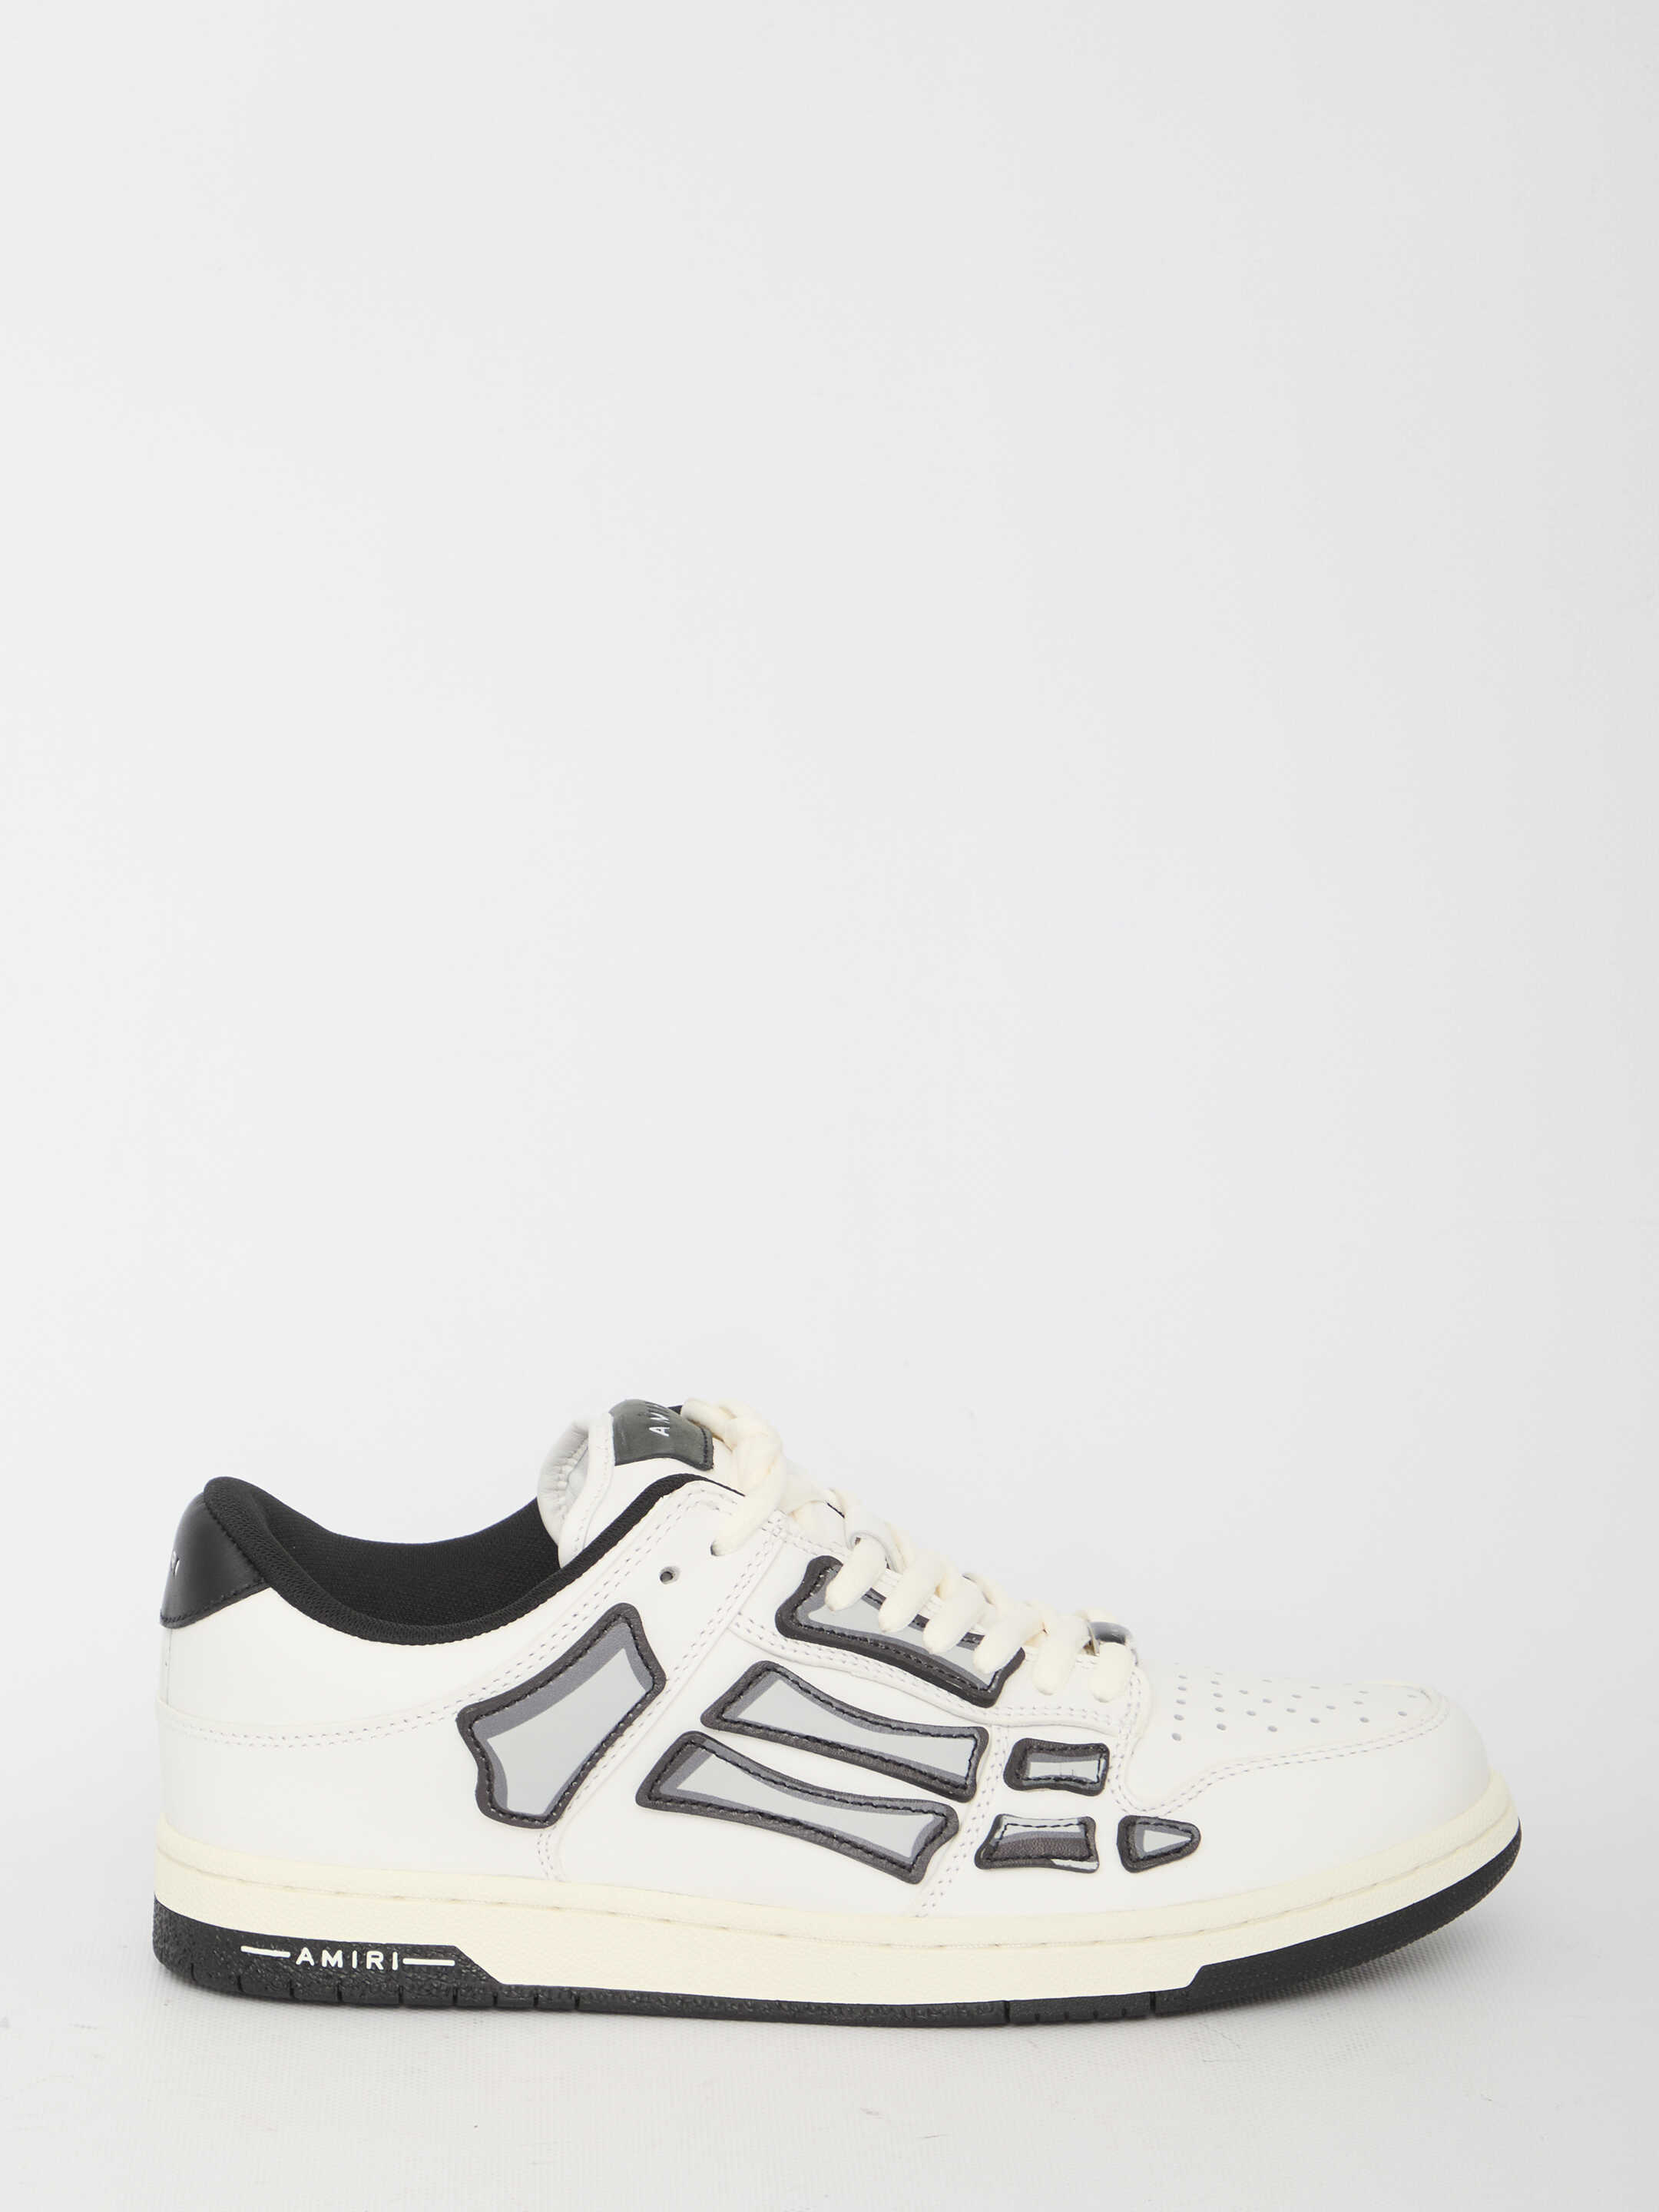 AMIRI Chunky Skel Top Low Sneakers WHITE